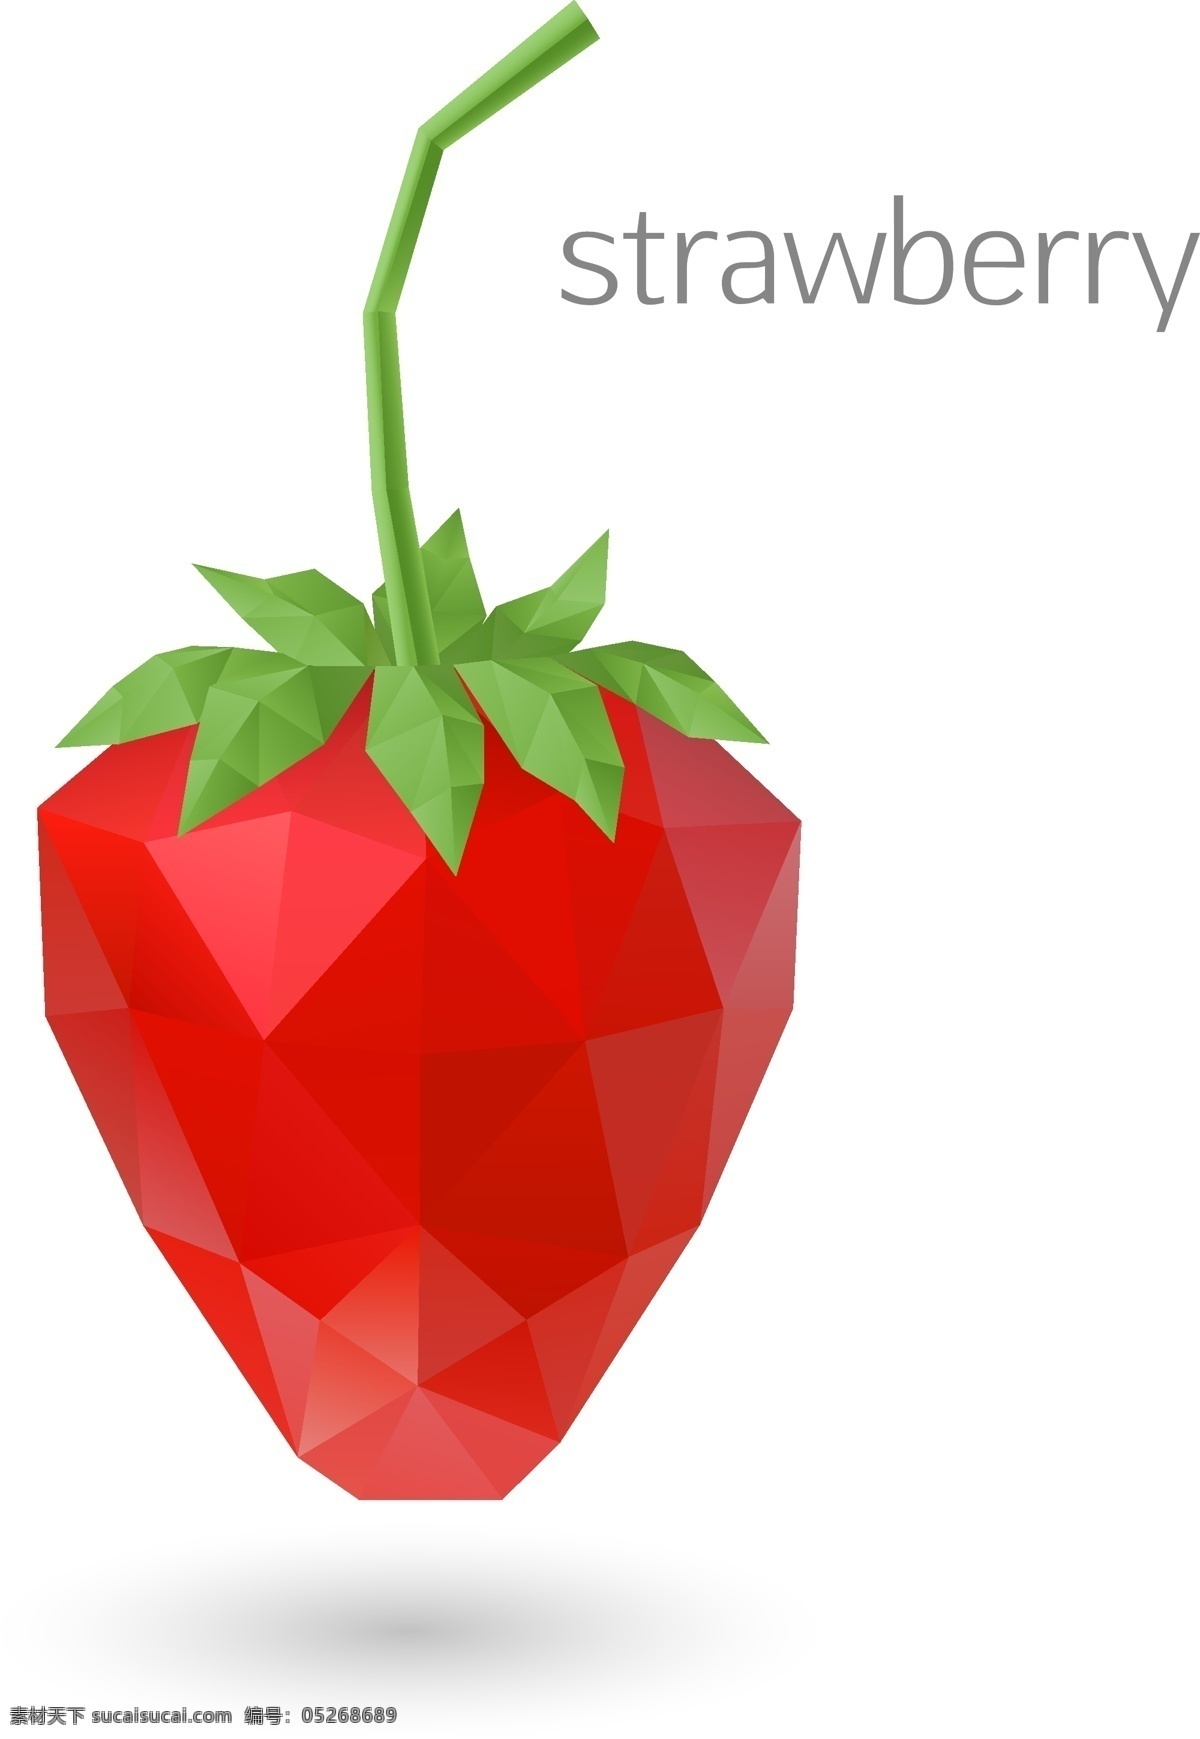 菱形 草莓 矢量图 菱形草莓 卡通樱桃 cherry 卡通素材 樱桃 矢量素材 水果